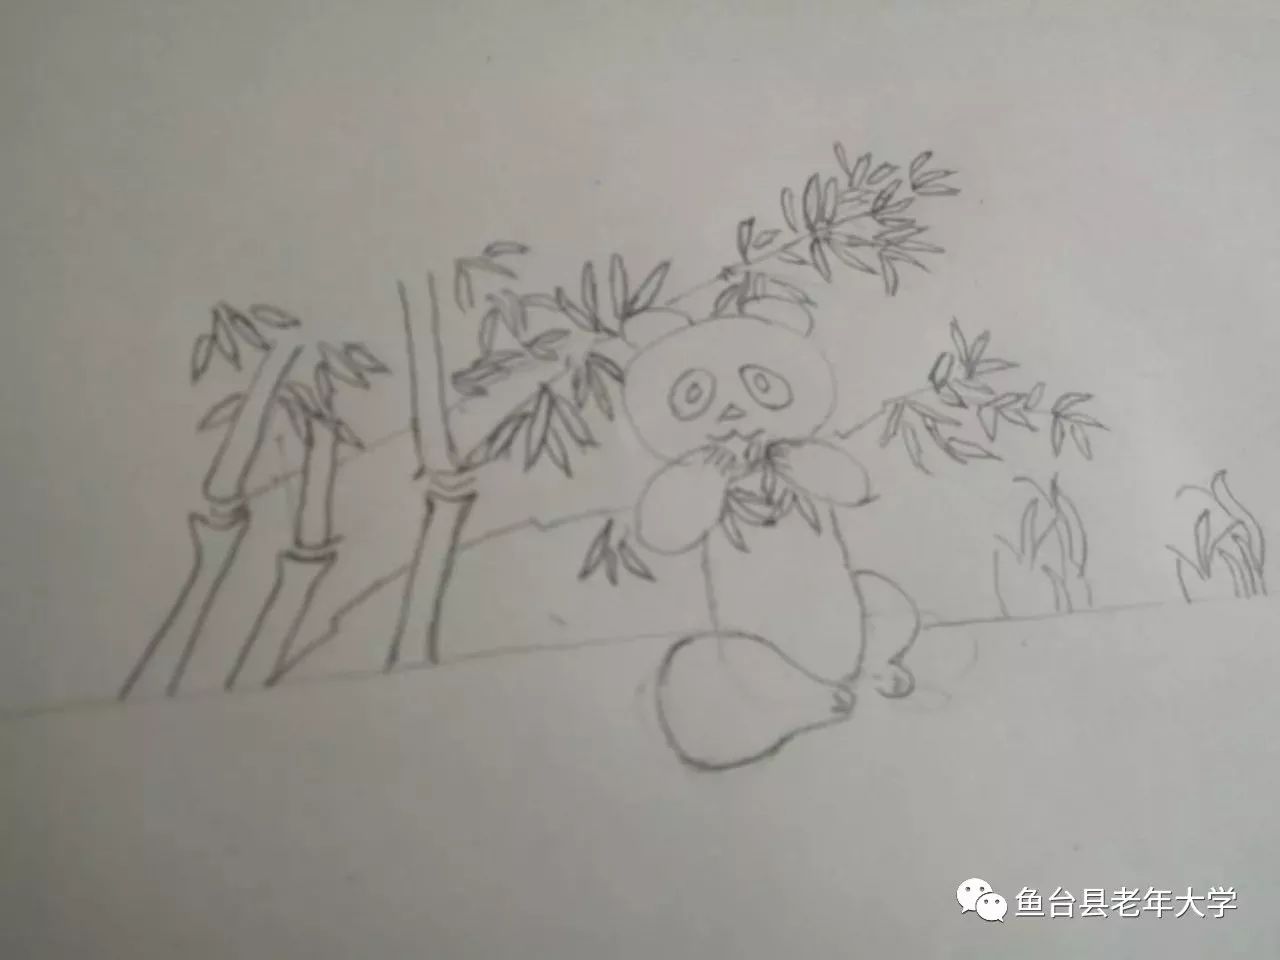 趁着兴奋,又给大家一个好玩的教题,教画小熊猫吃竹子,老师所讲具体